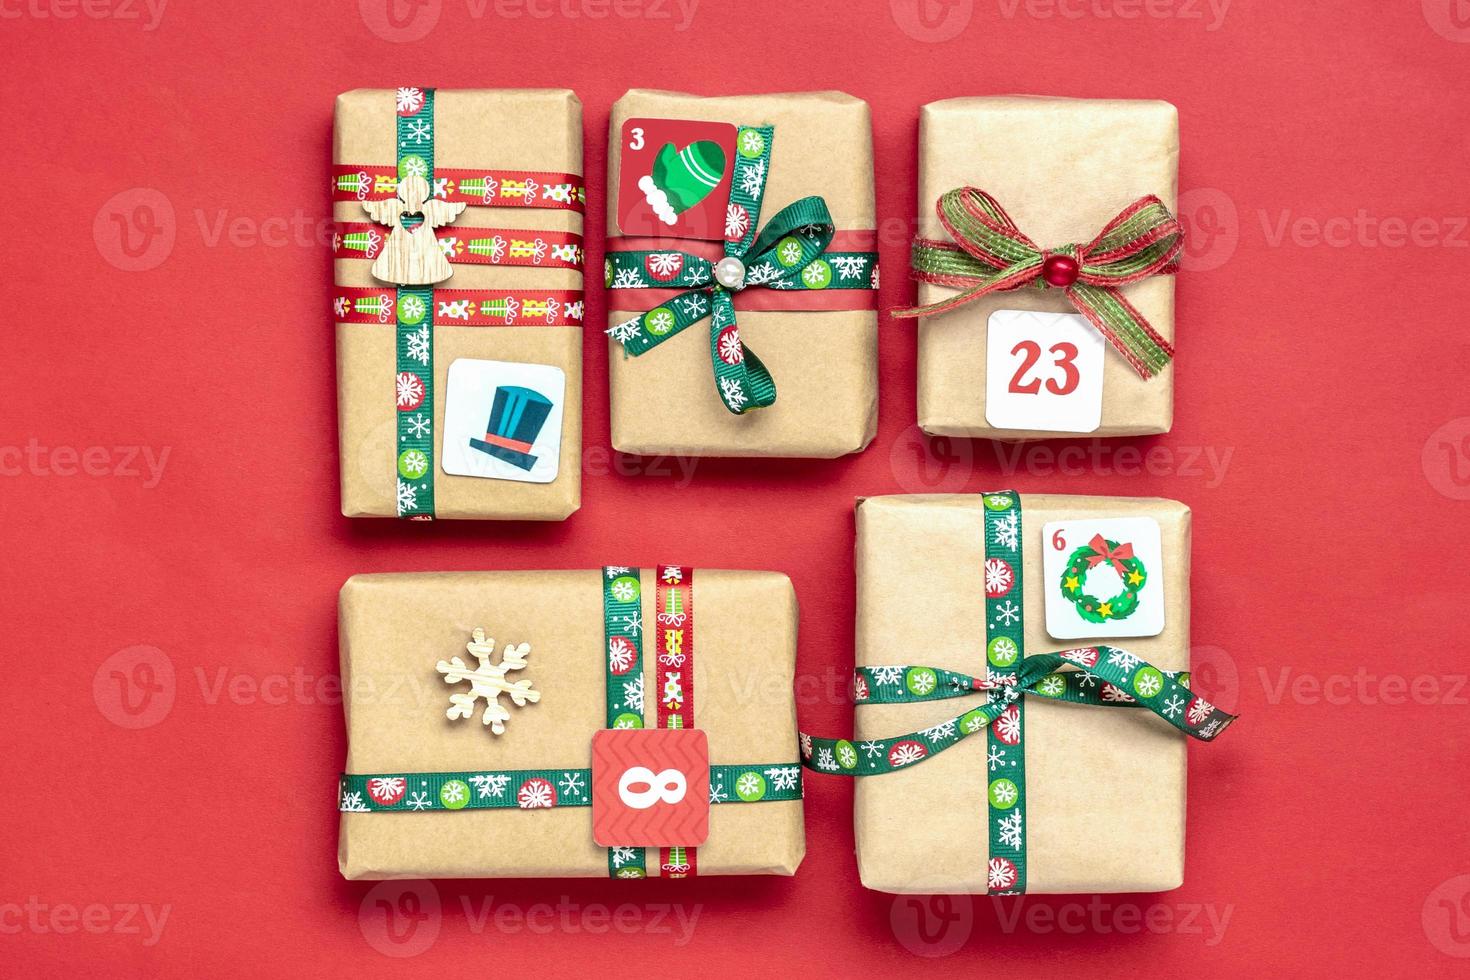 cajas de regalo rojas y verdes envueltas a mano decoradas con cintas, copos de nieve y números, adornos navideños y decoración en la mesa concepto de calendario de adviento de navidad vista superior banner de tarjeta navideña plana foto